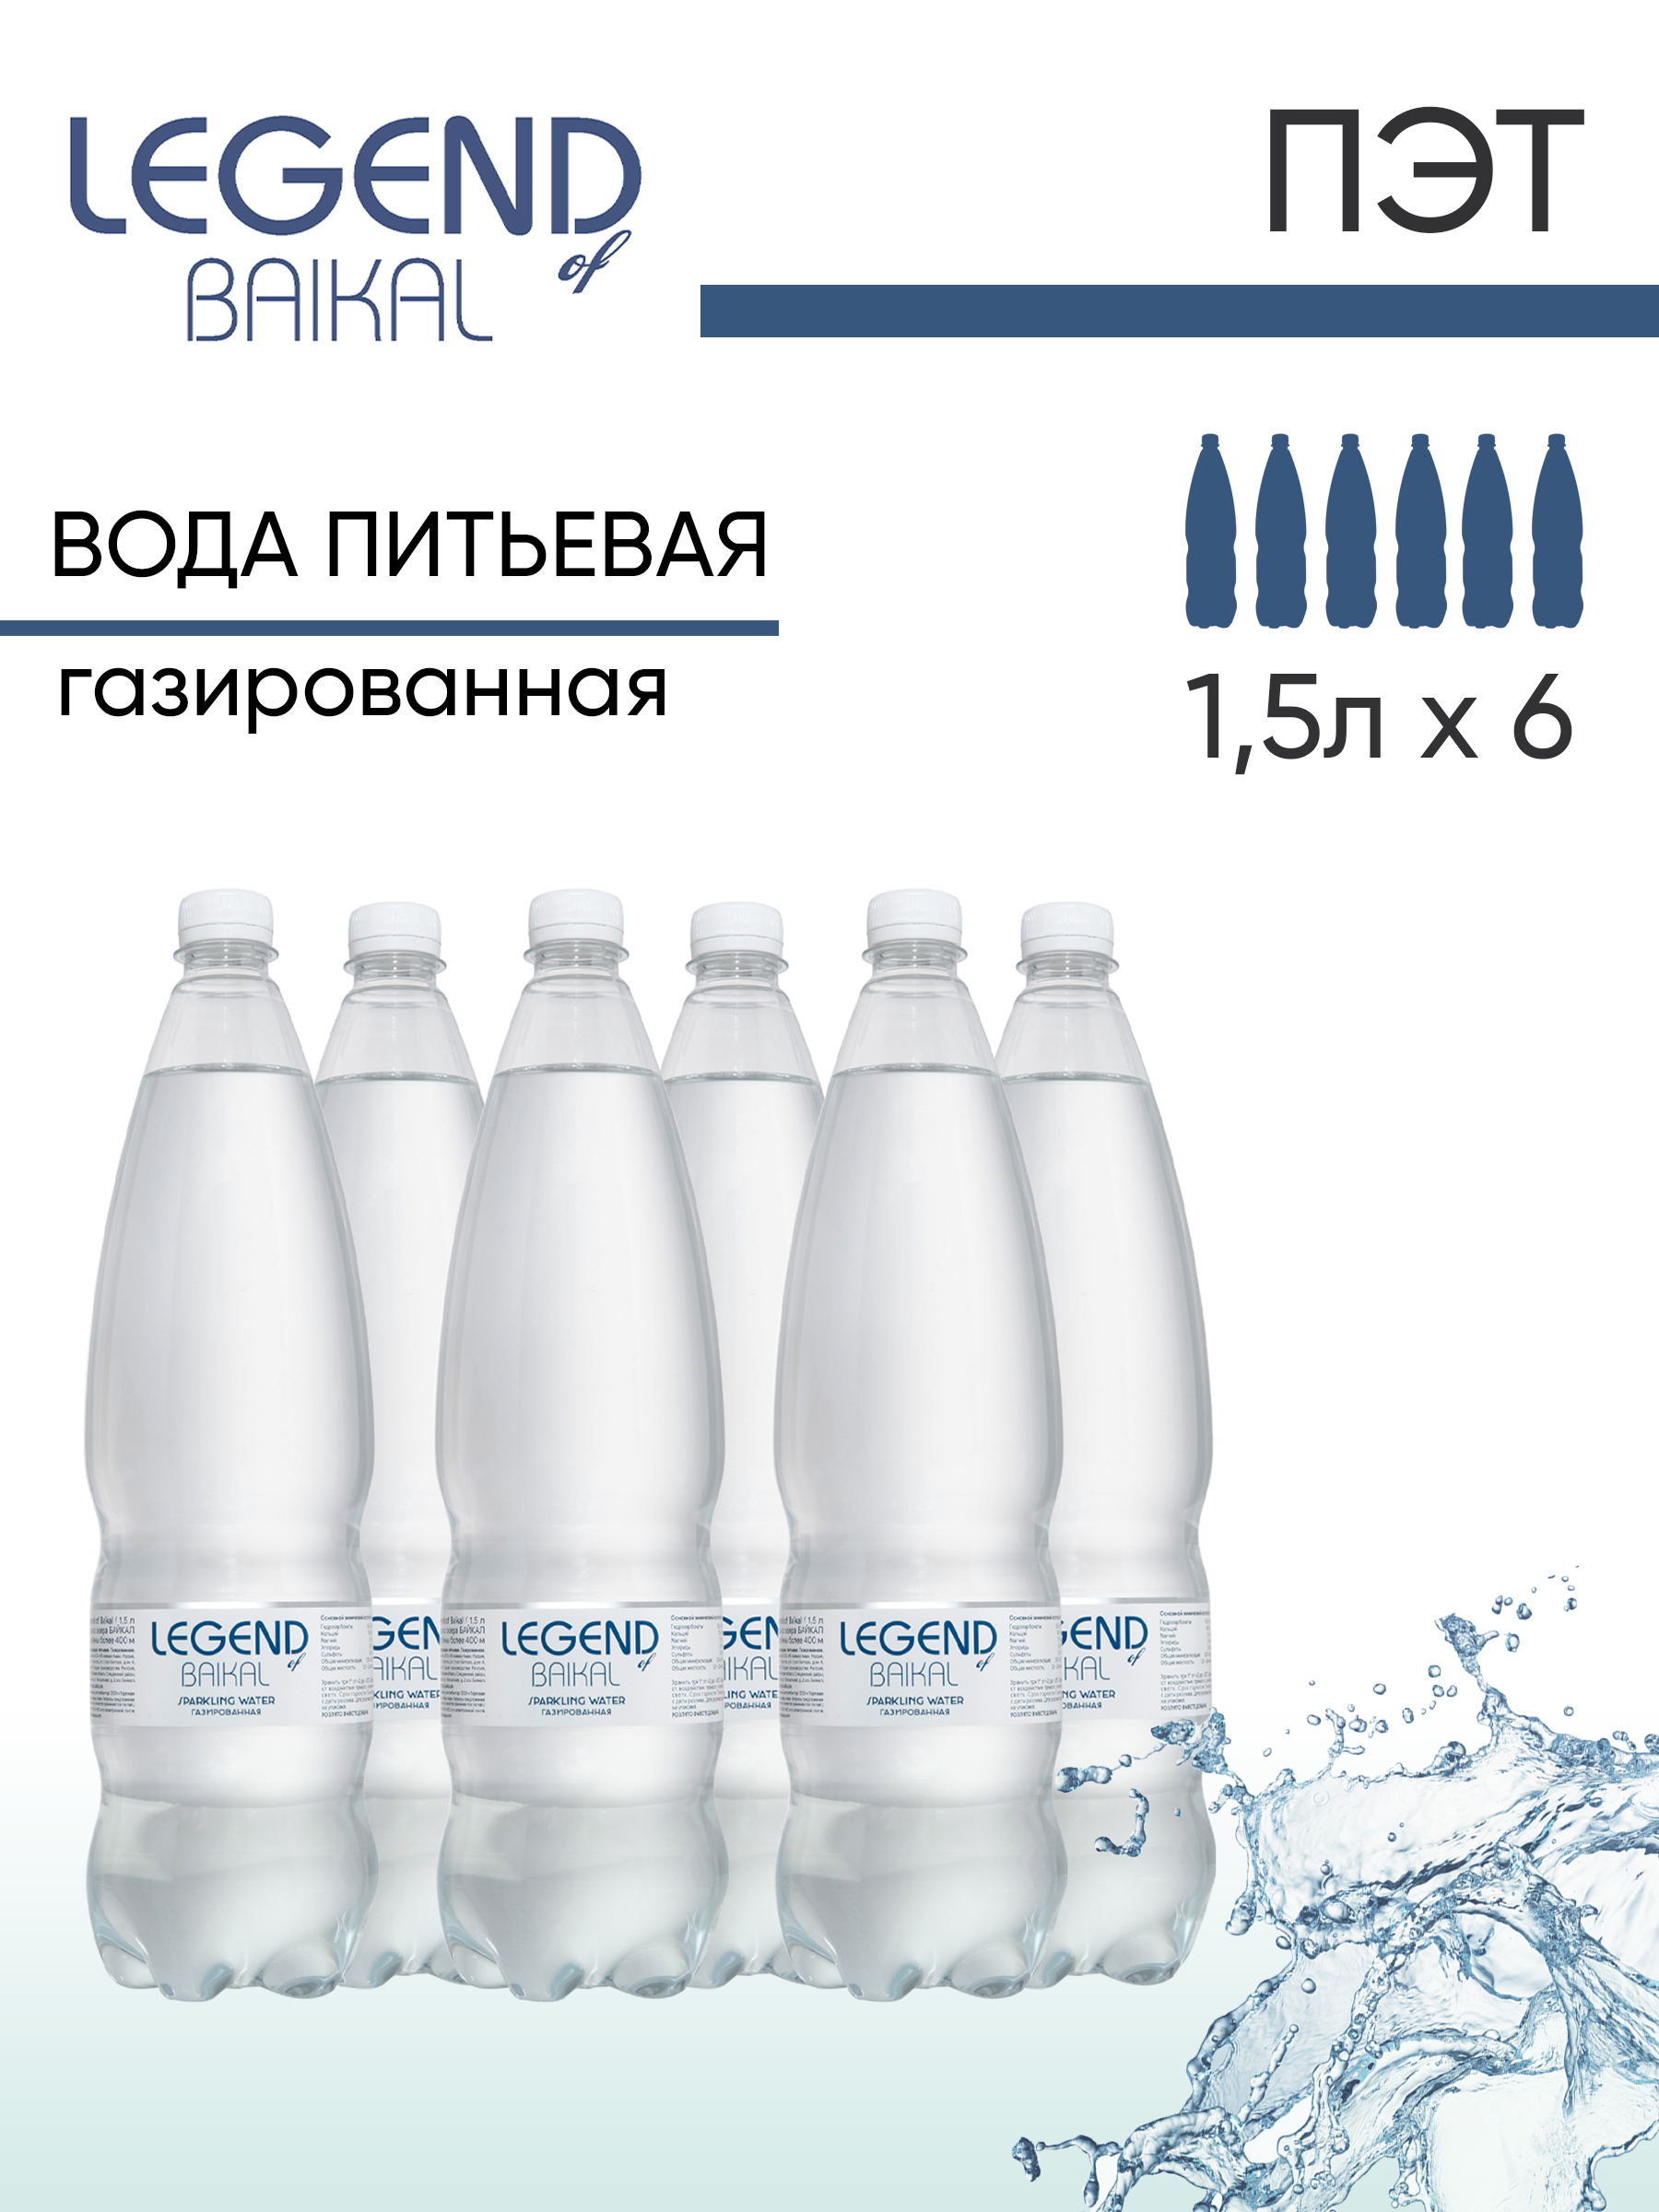 Вода Жемчужина Байкала 1,5л. Газированная вода Байкал состав. Вода питьевая природная "Legend of Baikal" газированная 500мл стекло. Газированная вода Байкал цвет.